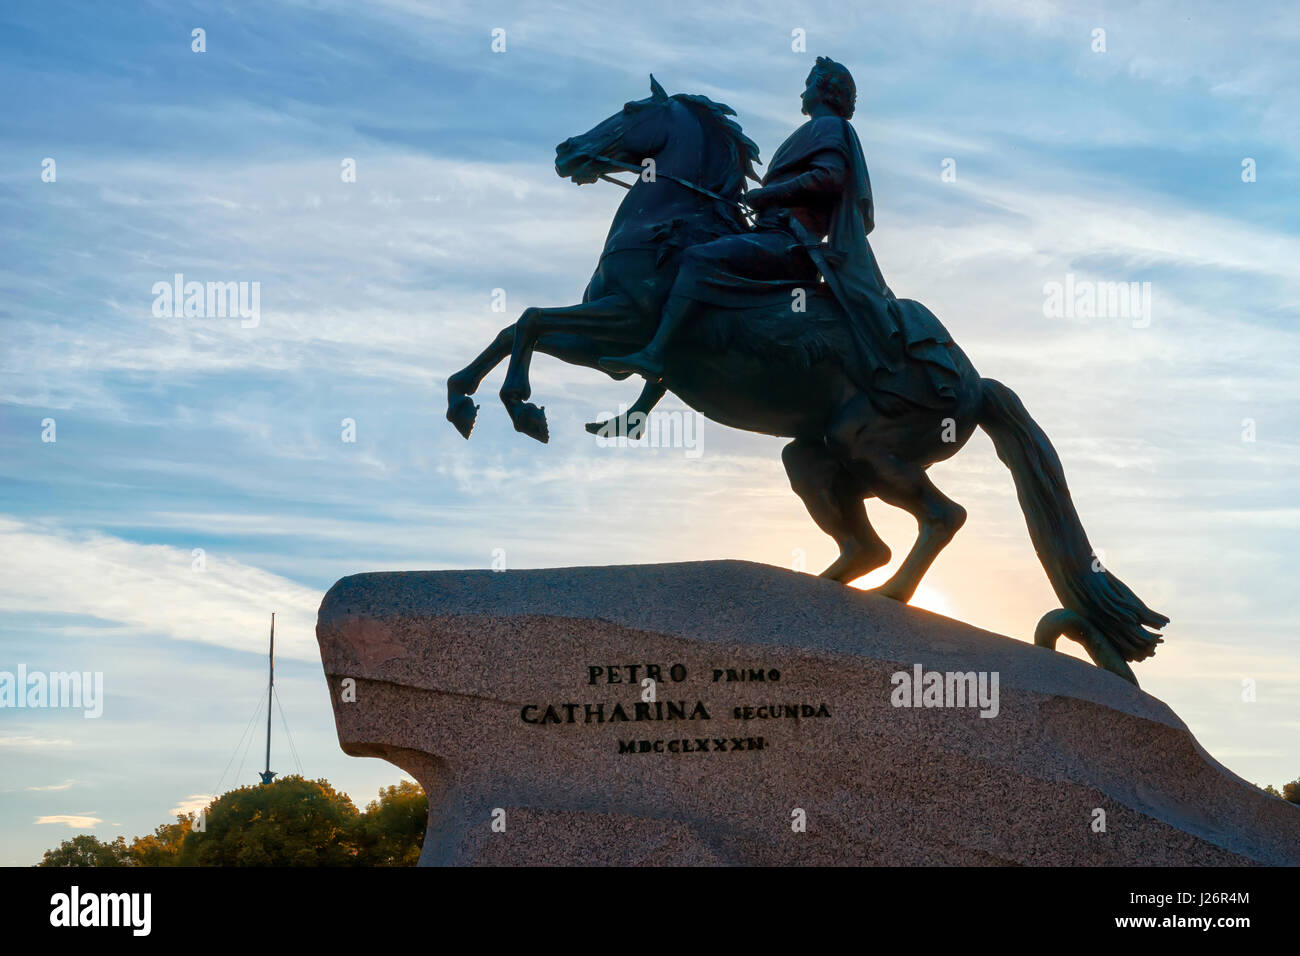 Statue équestre de Pierre le Grand (bronze horseman), Saint-Pétersbourg, Russie. Ciel du matin contre une silhouette Banque D'Images